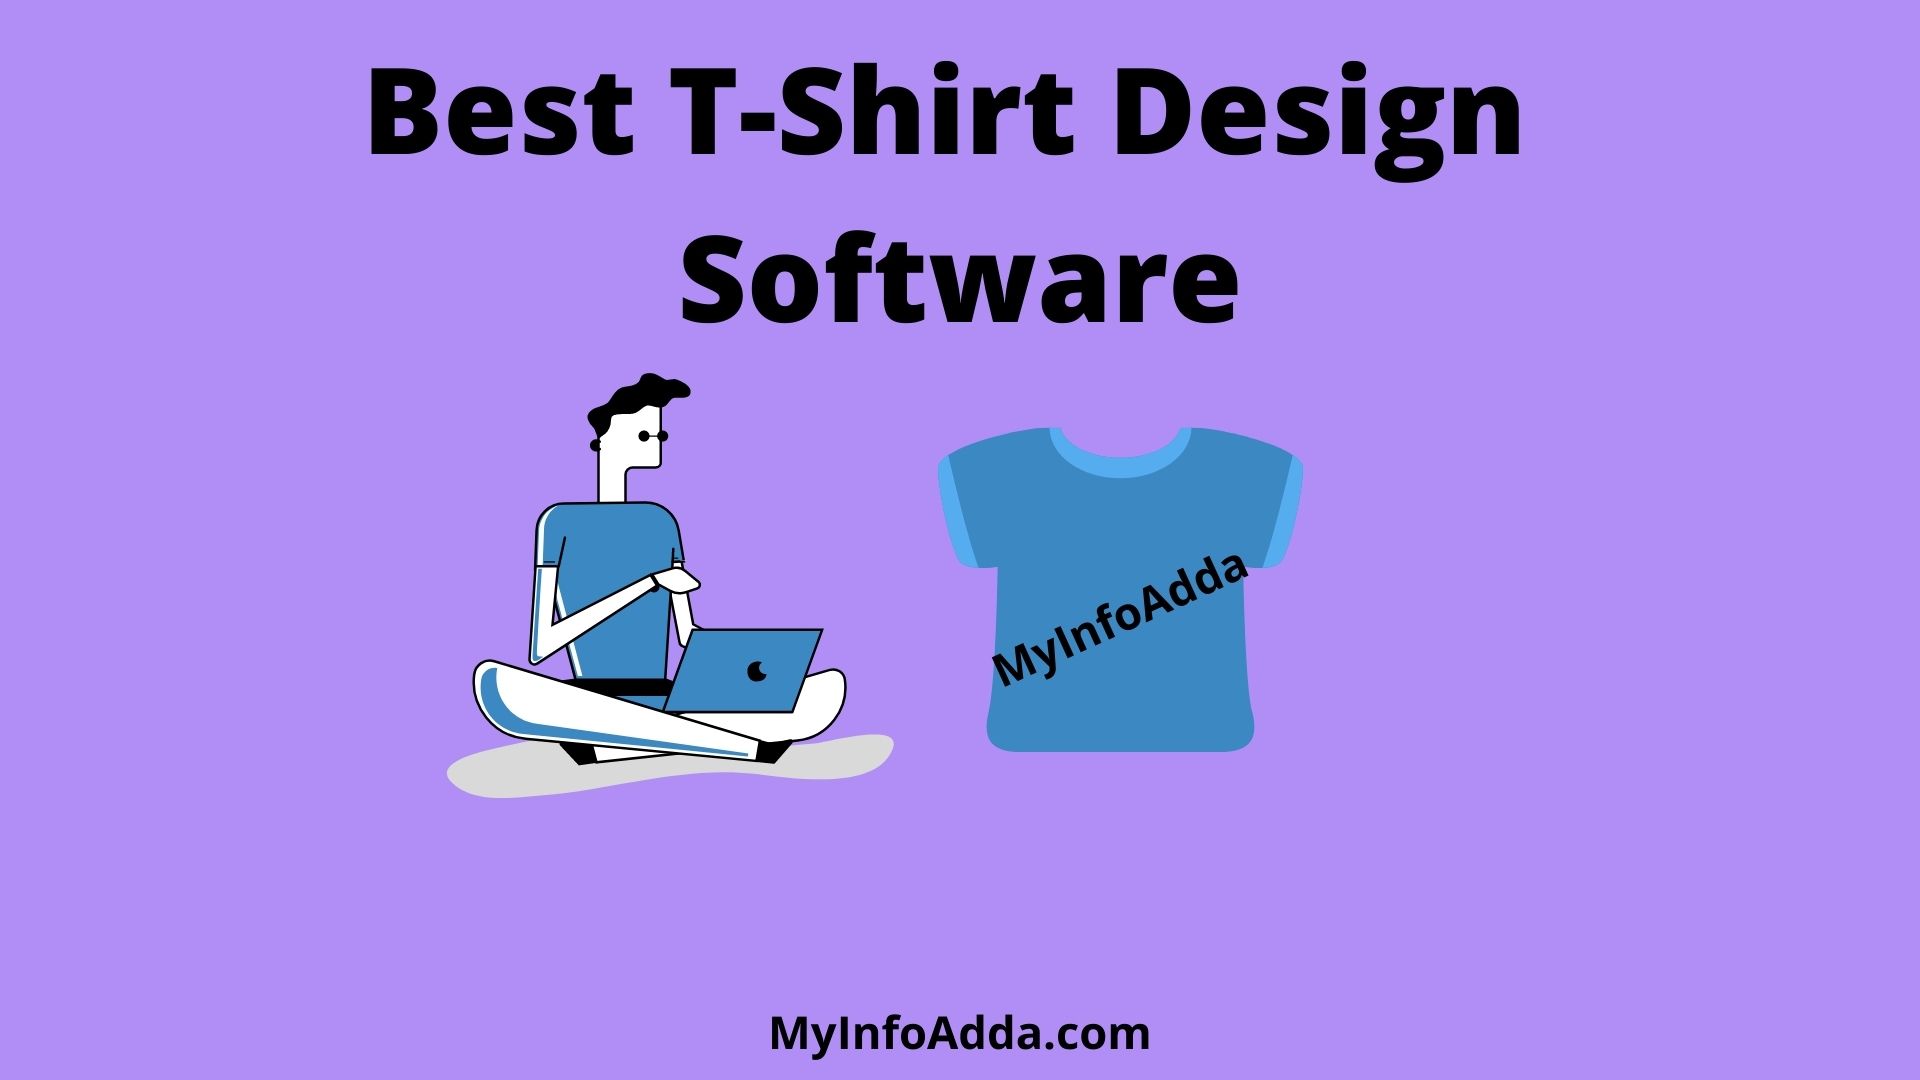 Best T-Shirt Design Software